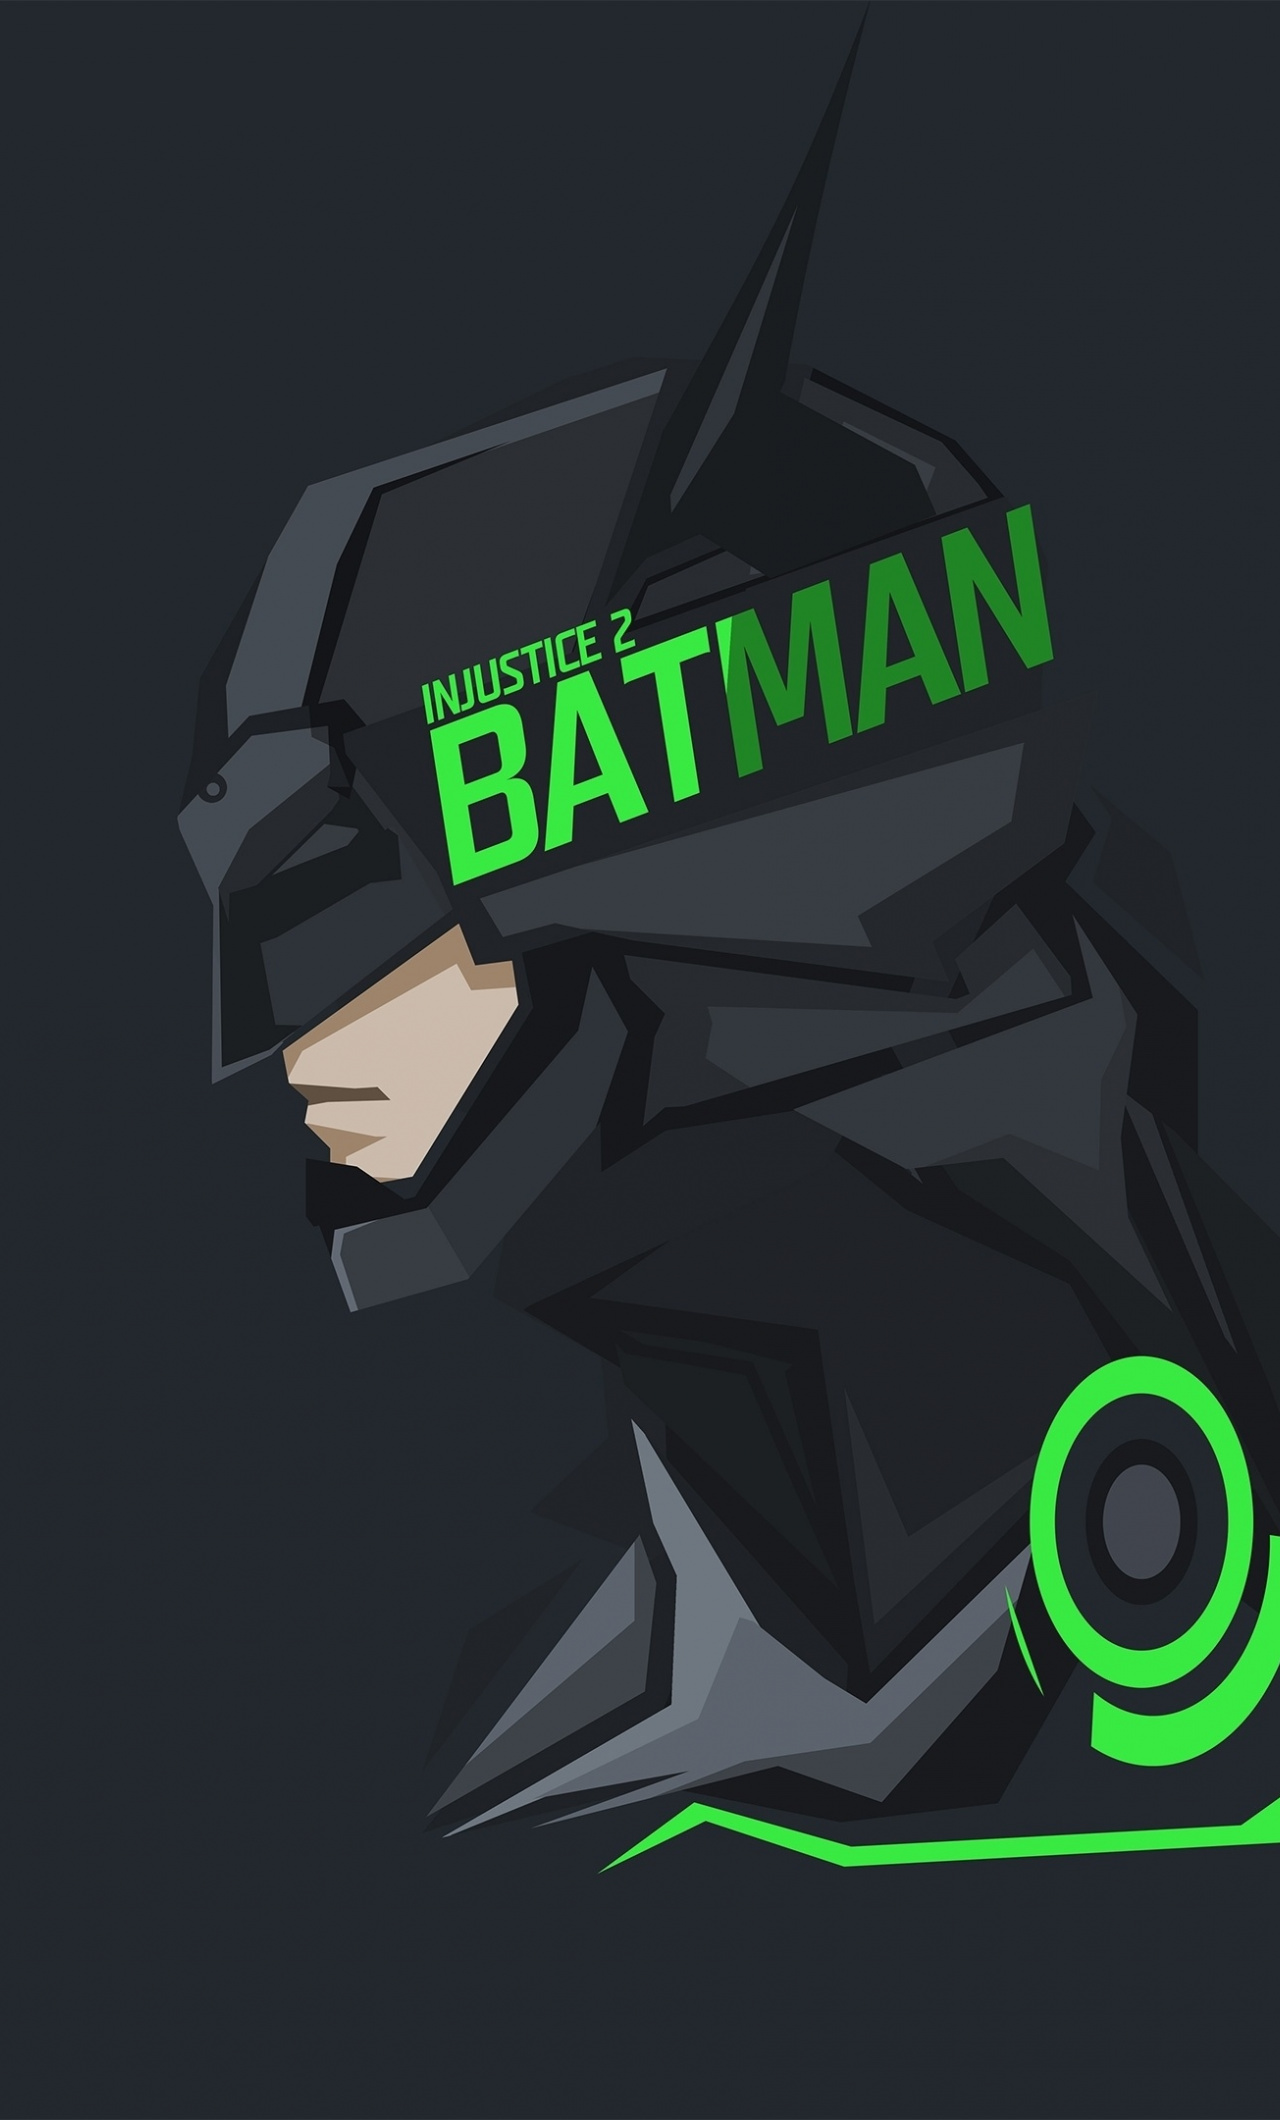 Batman Injustice Wallpaper - Injustice 2 Batman Logo , HD Wallpaper & Backgrounds